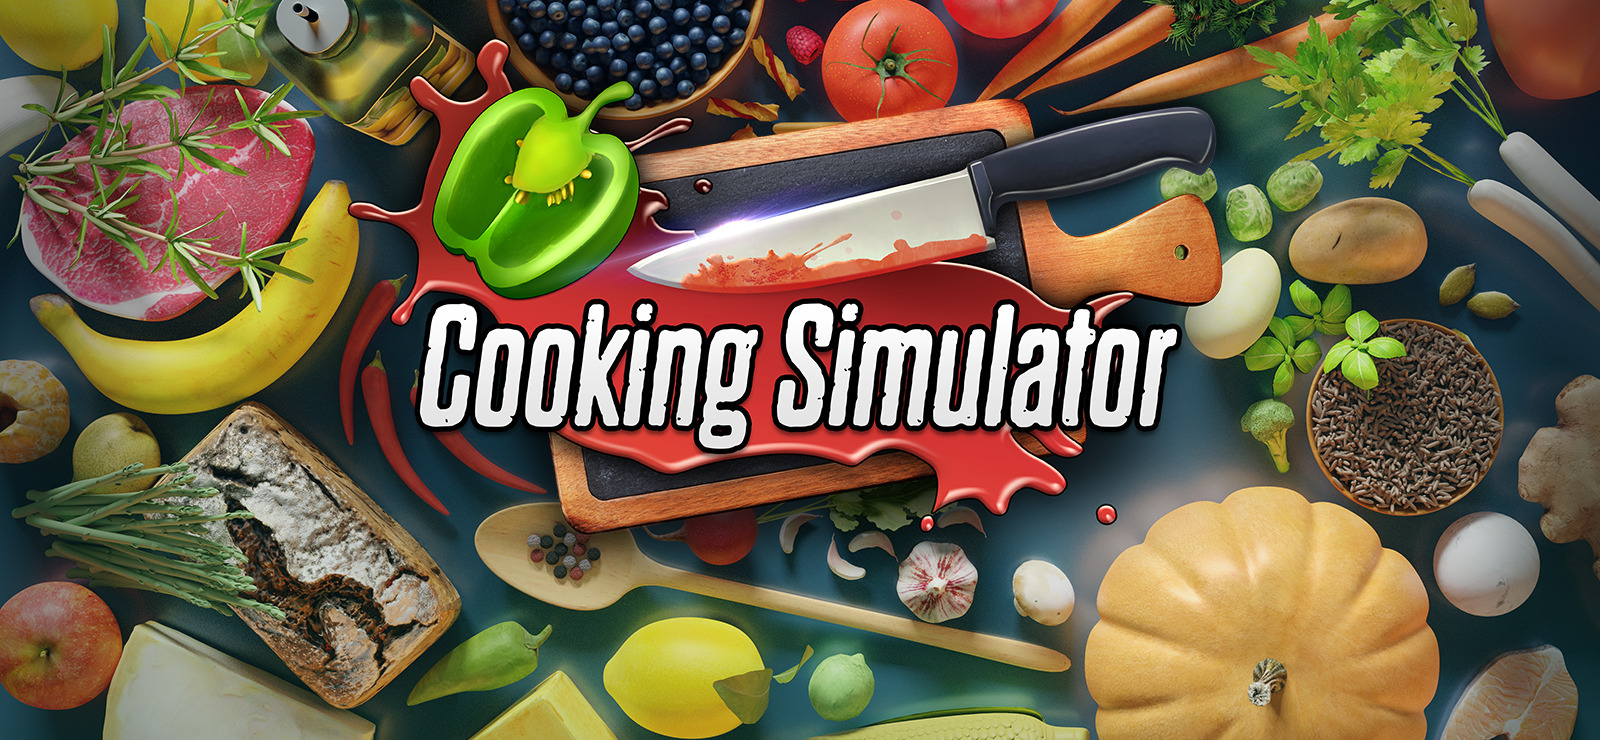 Кукинг симулятор 2. Кукинг симулятор. Значок кукинг симулятор. Симулятор готовки на ПК. Cooking Simulator логотип.